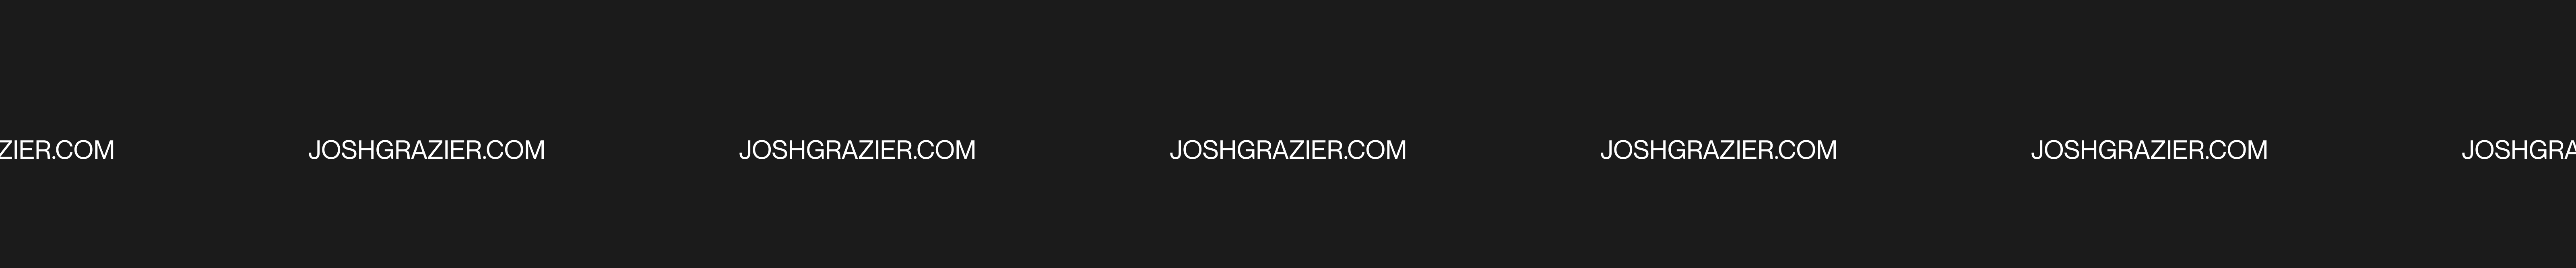 Josh Grazier's profile banner